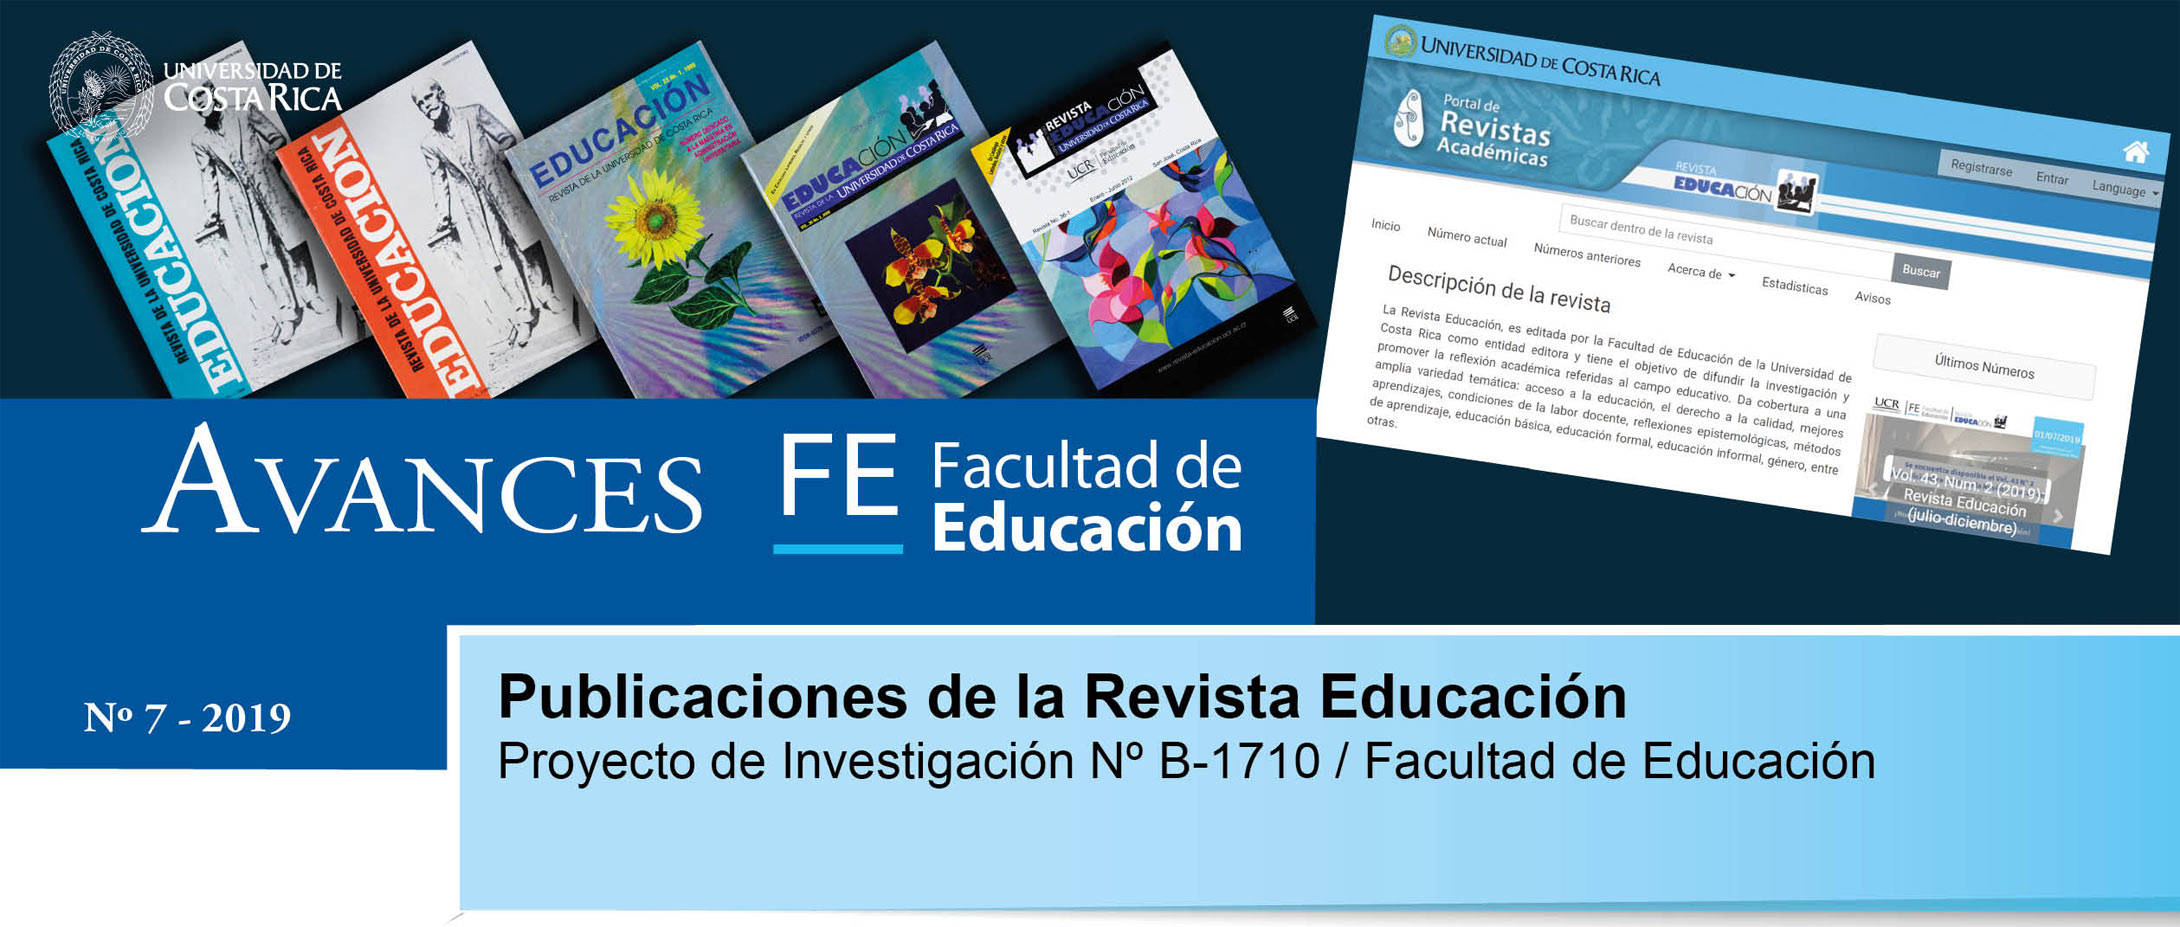 Avances FE de la Facultad de Educación presenta el proyecto de investigación: Revista Educación